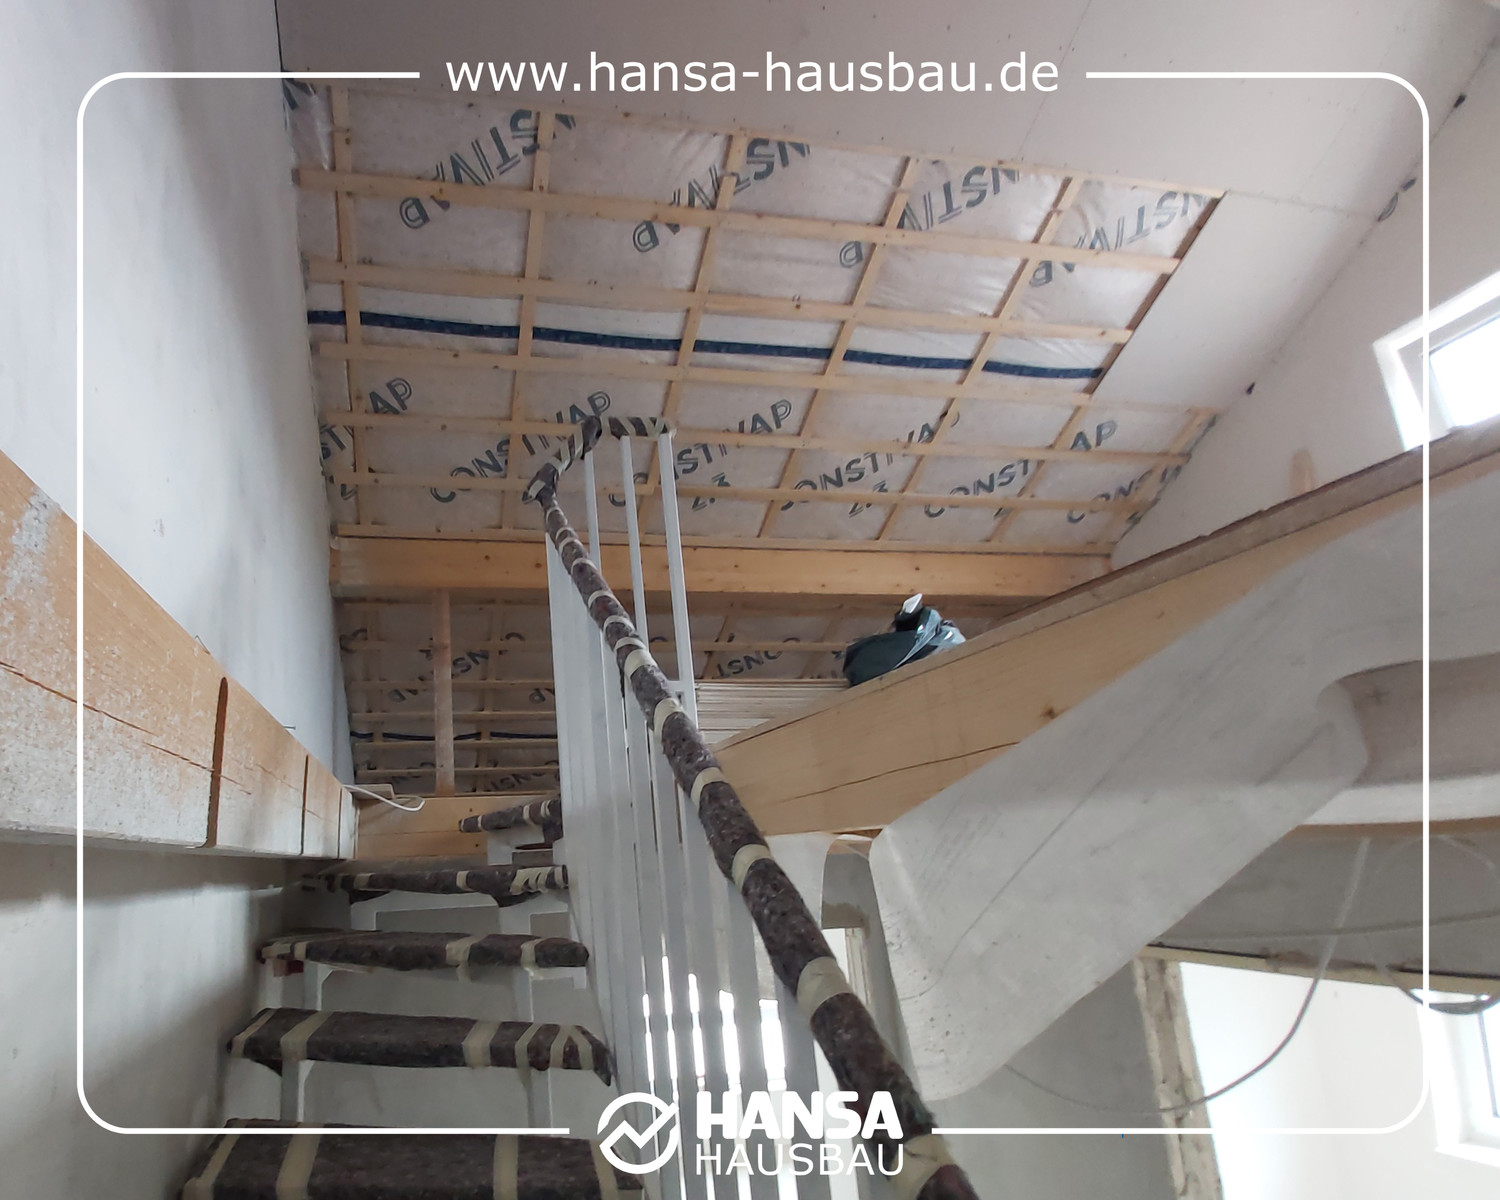 Hansa Hausbau Bauplanung Architektenhaus Neubau 